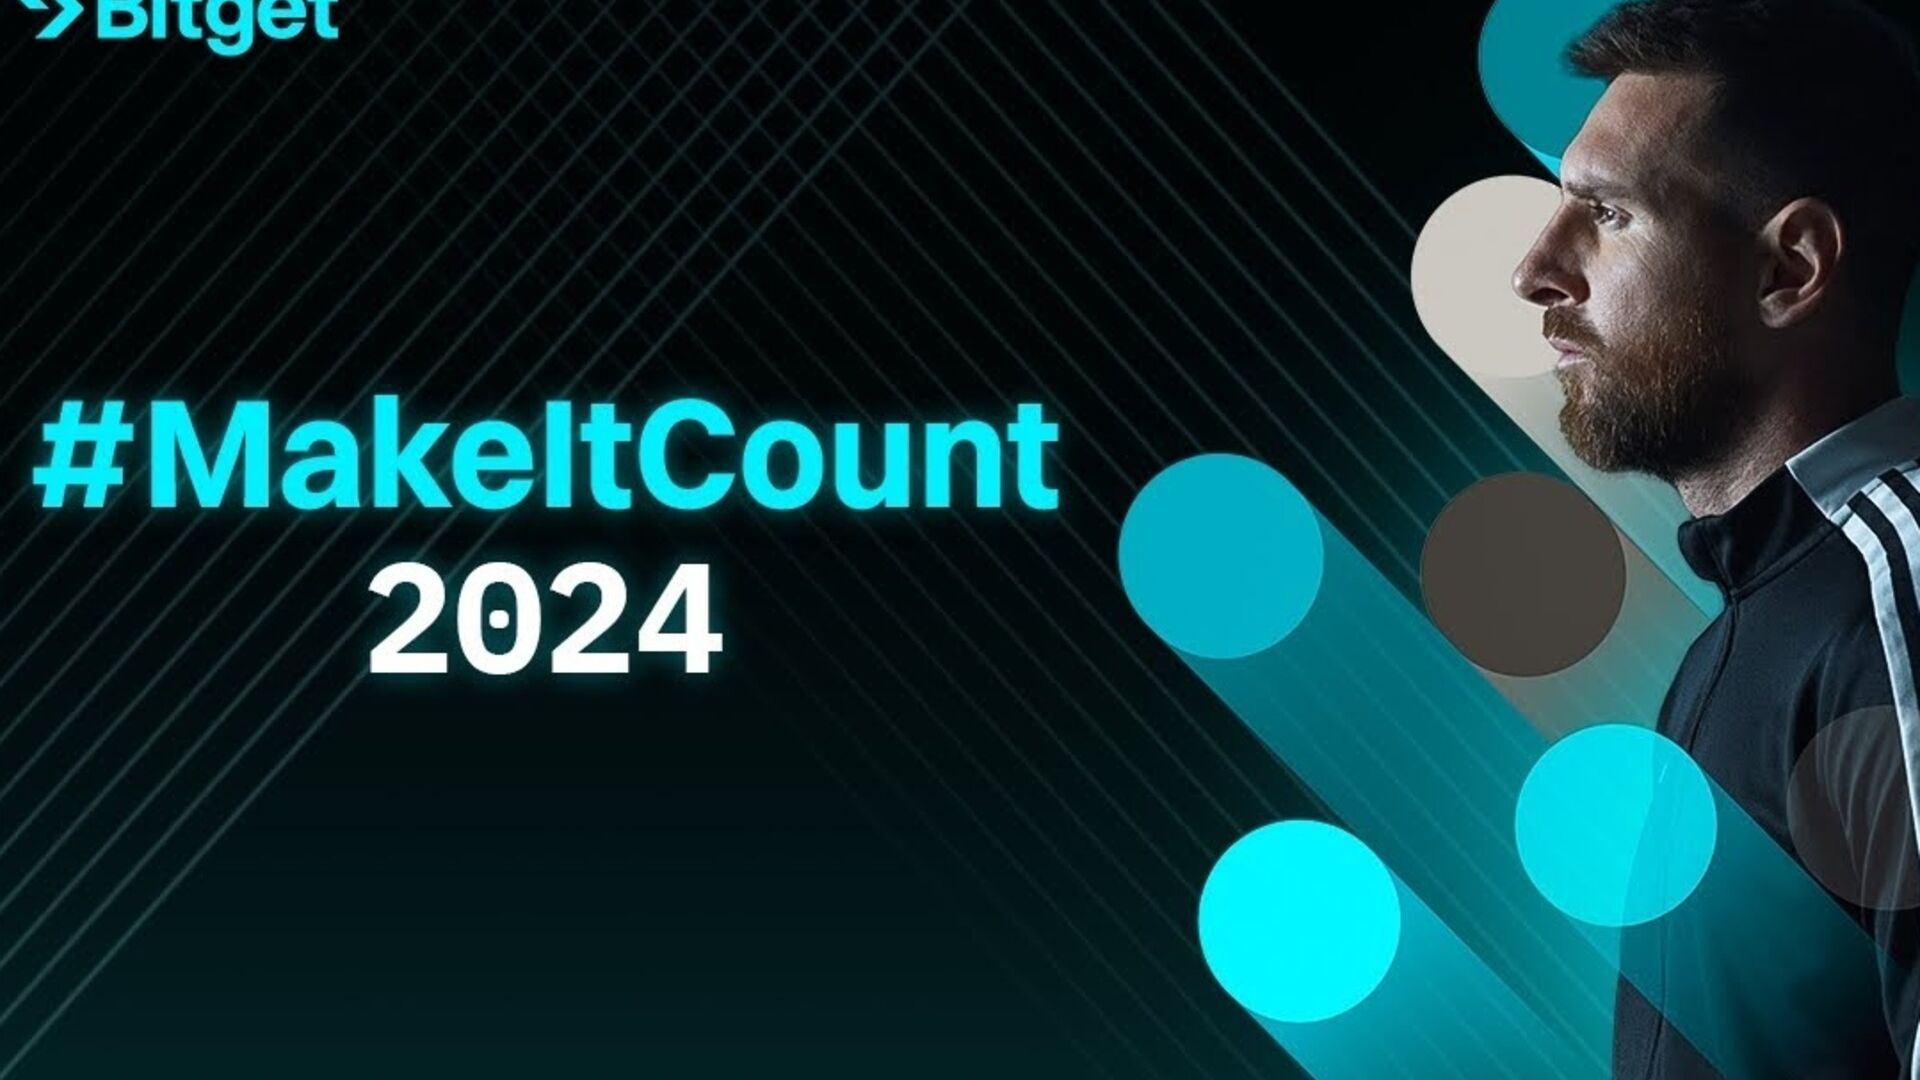 Lionel Messi: elokuva #MakeItCount 2024 symboloi kryptopörssin Bitgetin ja argentiinalaisen jalkapalloilijan yhteisiä perusarvoja